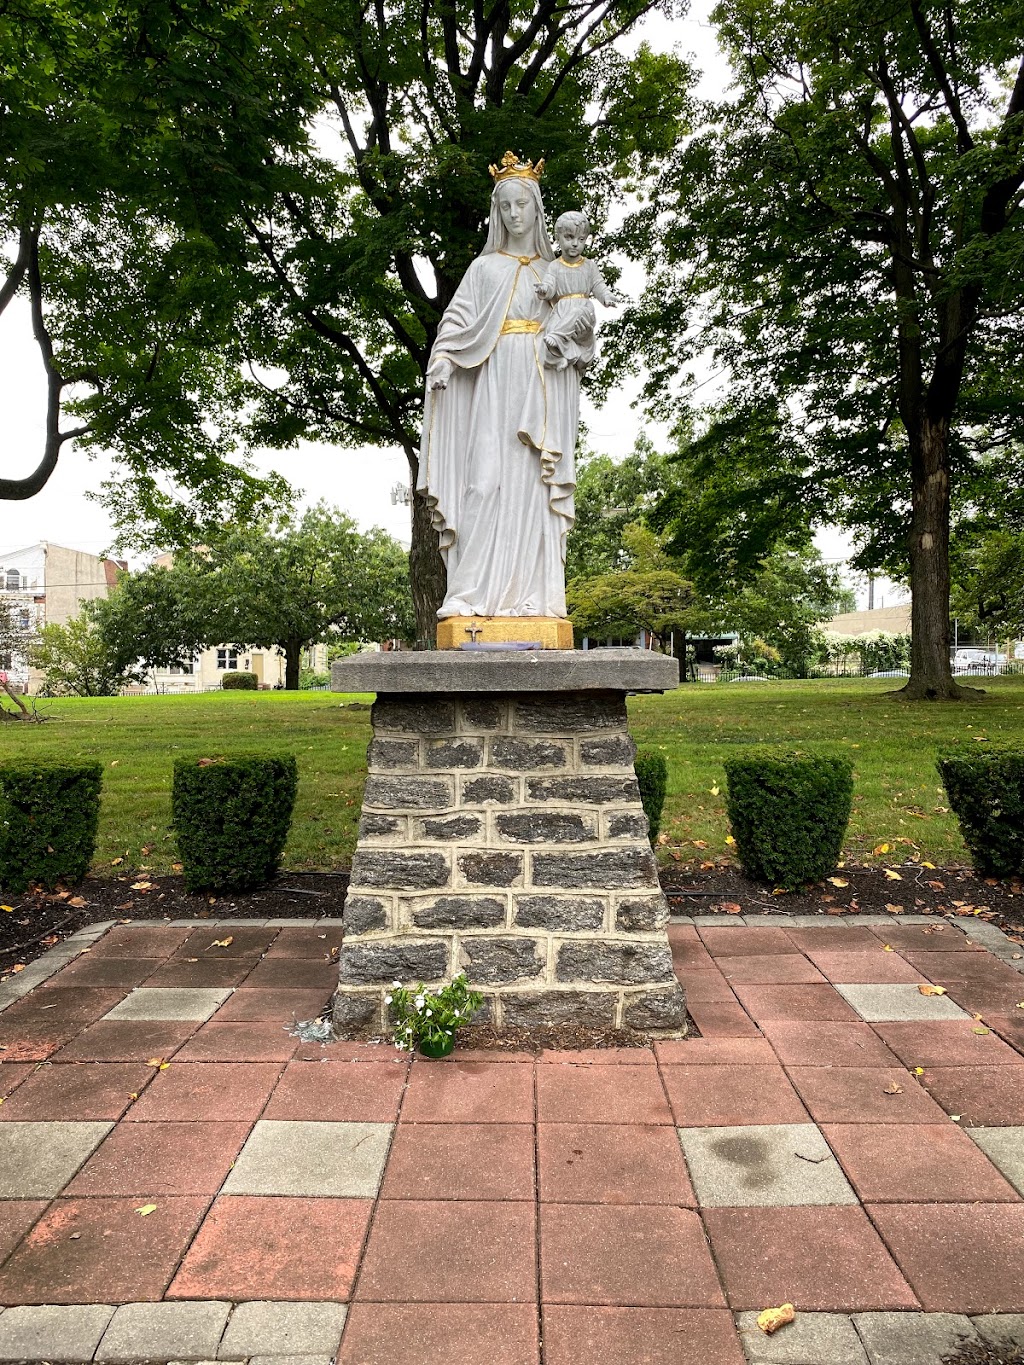 The Miraculous Medal Shrine | 500 E Chelten Ave, Philadelphia, PA 19144 | Phone: (215) 848-1010